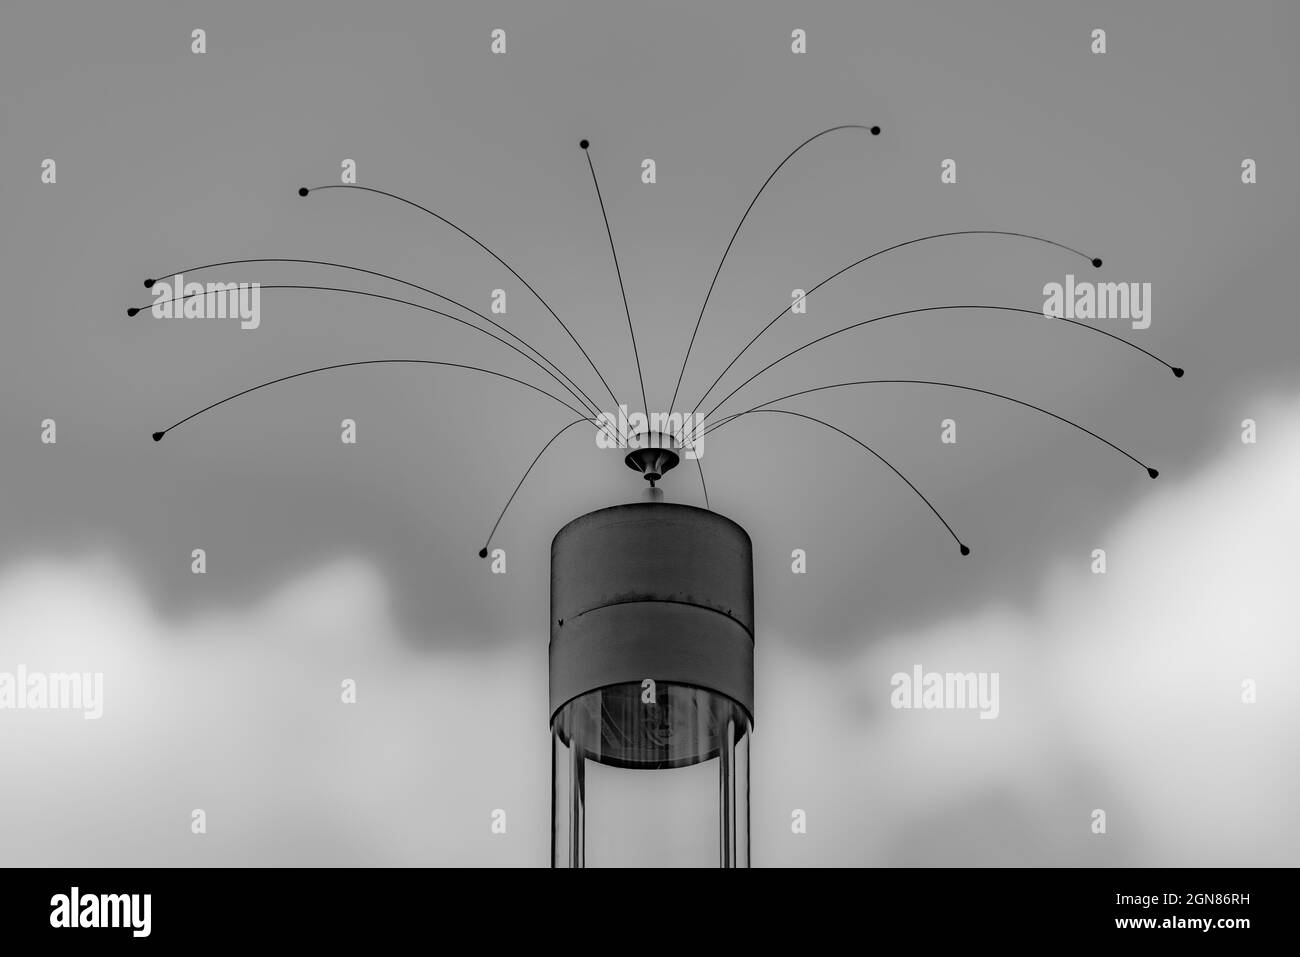 Prise de vue en niveaux de gris d'une antenne à haut fonctionnement sur un ciel nuageux Banque D'Images